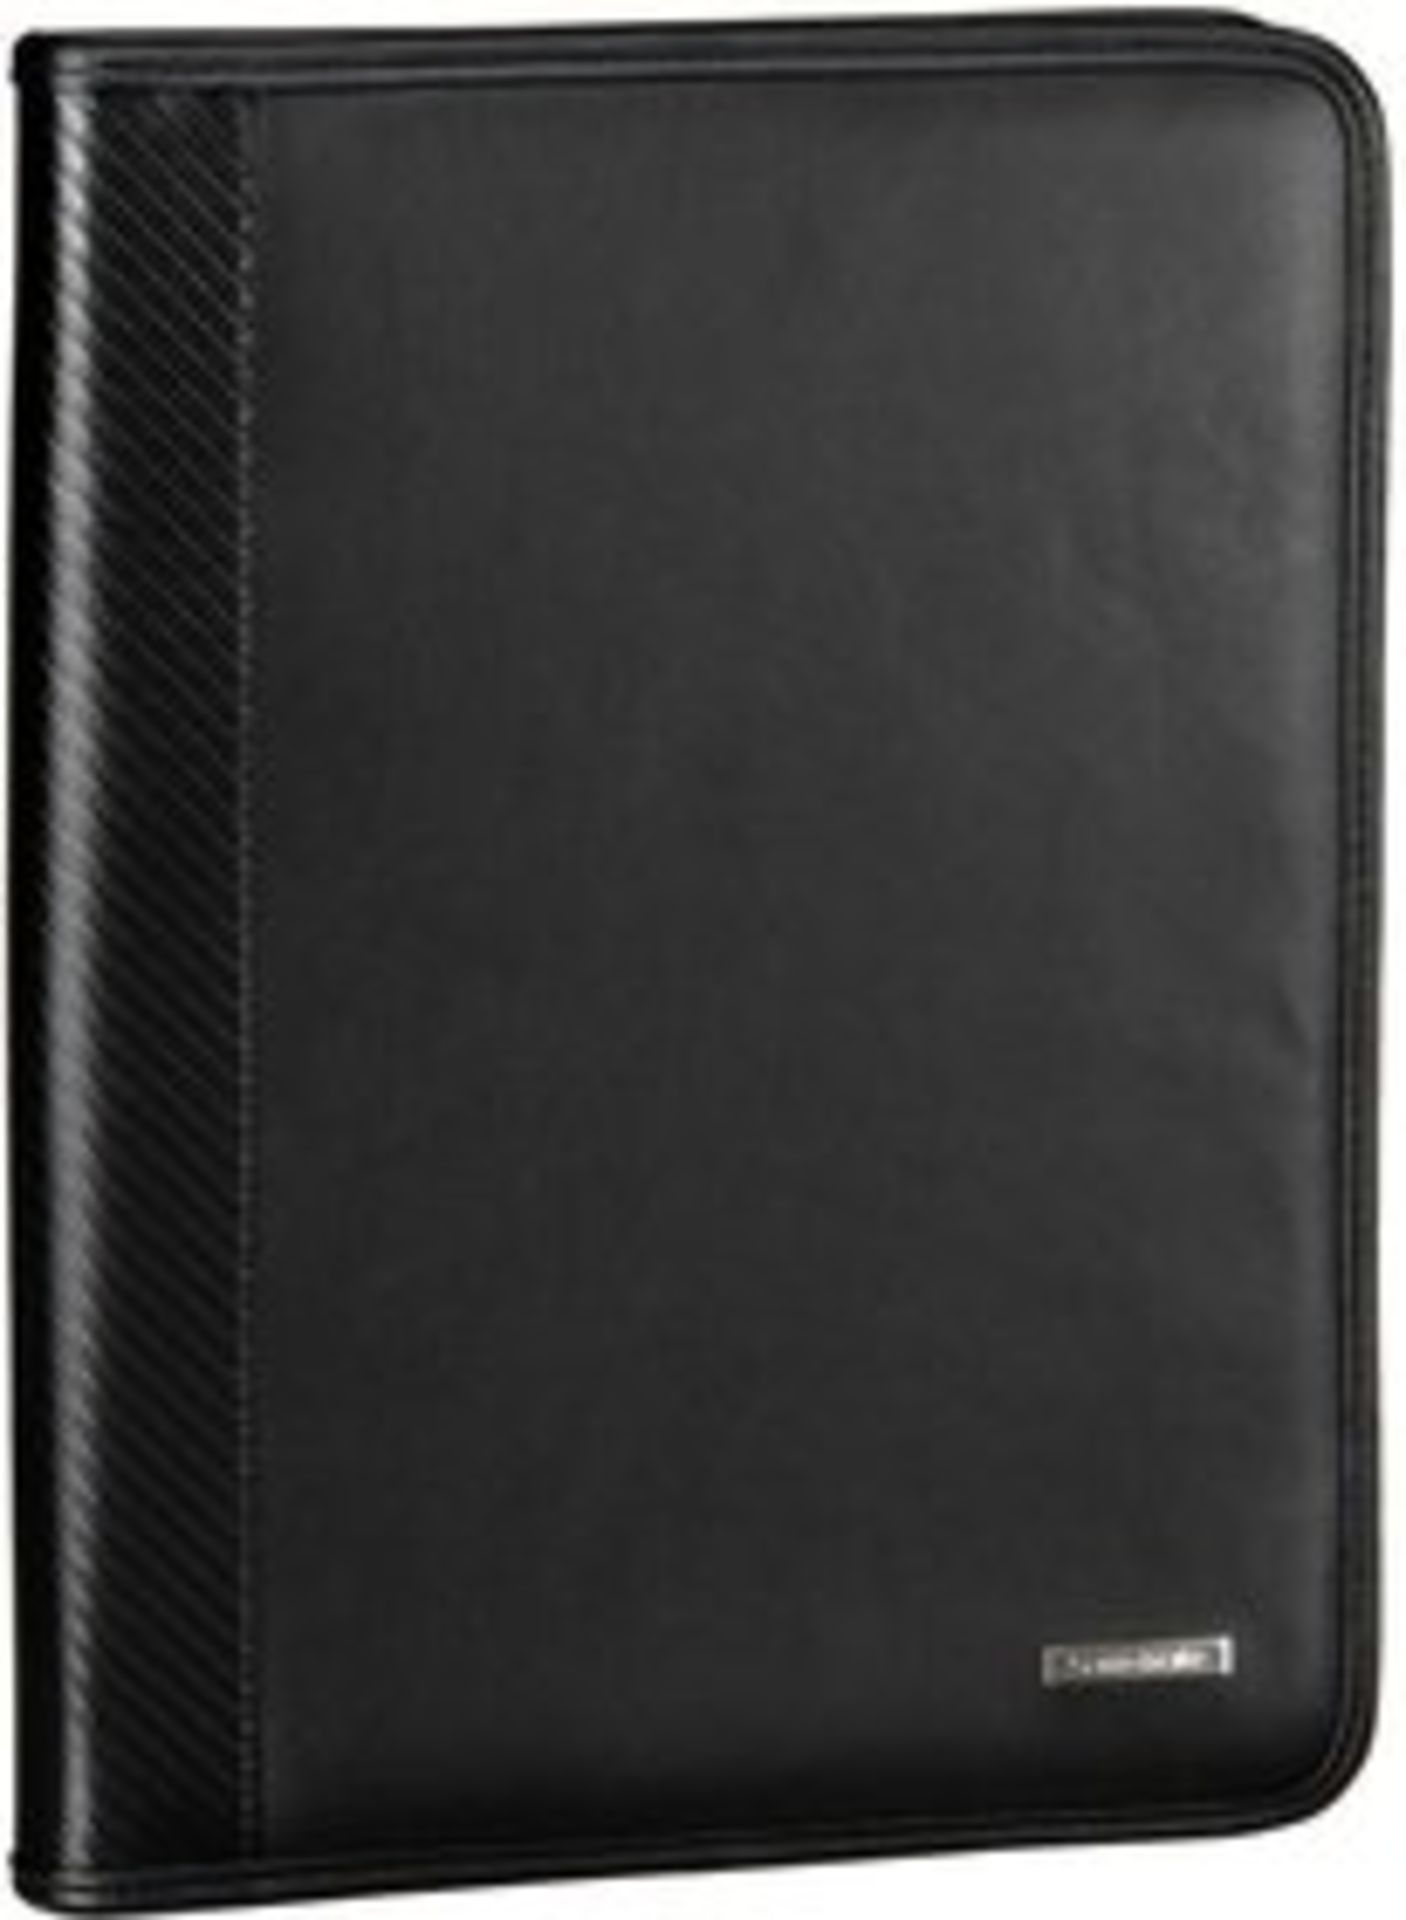 V Brand New Samsonite Black Leather Executive Folder With Ring Binder-Card Pockets-Pen Holder-Four